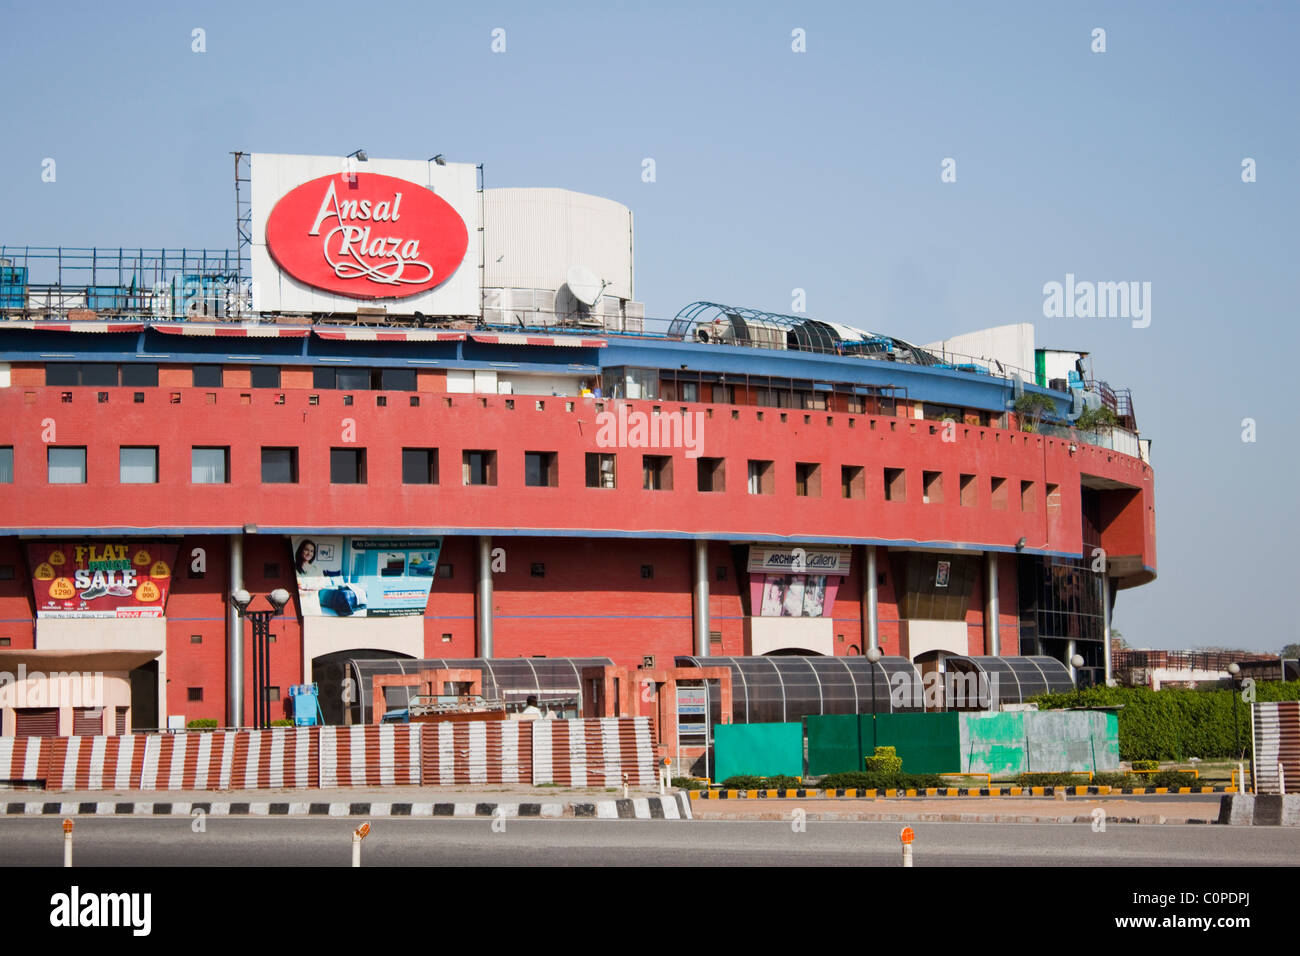 Facciata di un centro commerciale per lo shopping in background, Ansal Plaza New Delhi, India Foto Stock